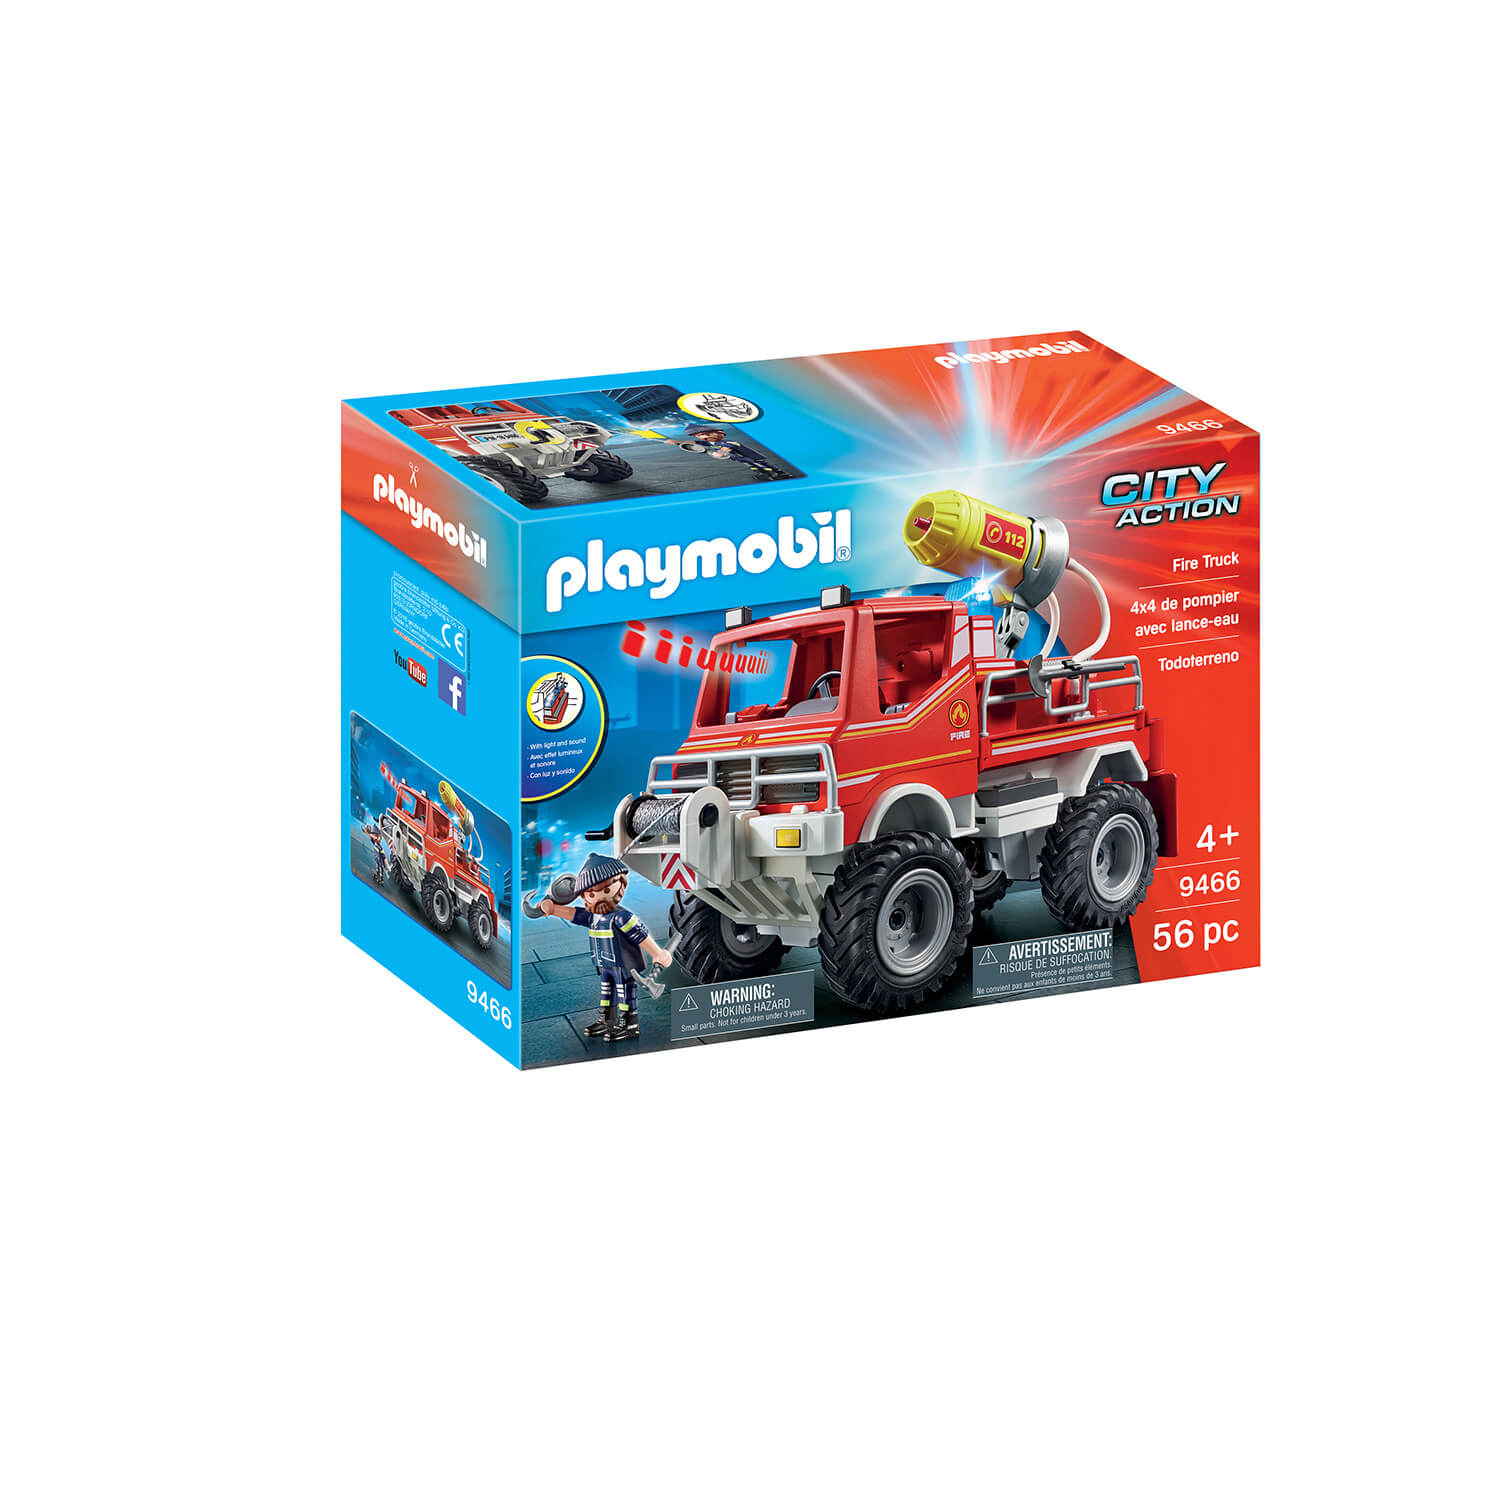 PLAYMOBIL Fire Brigade Fire Truck (9466)